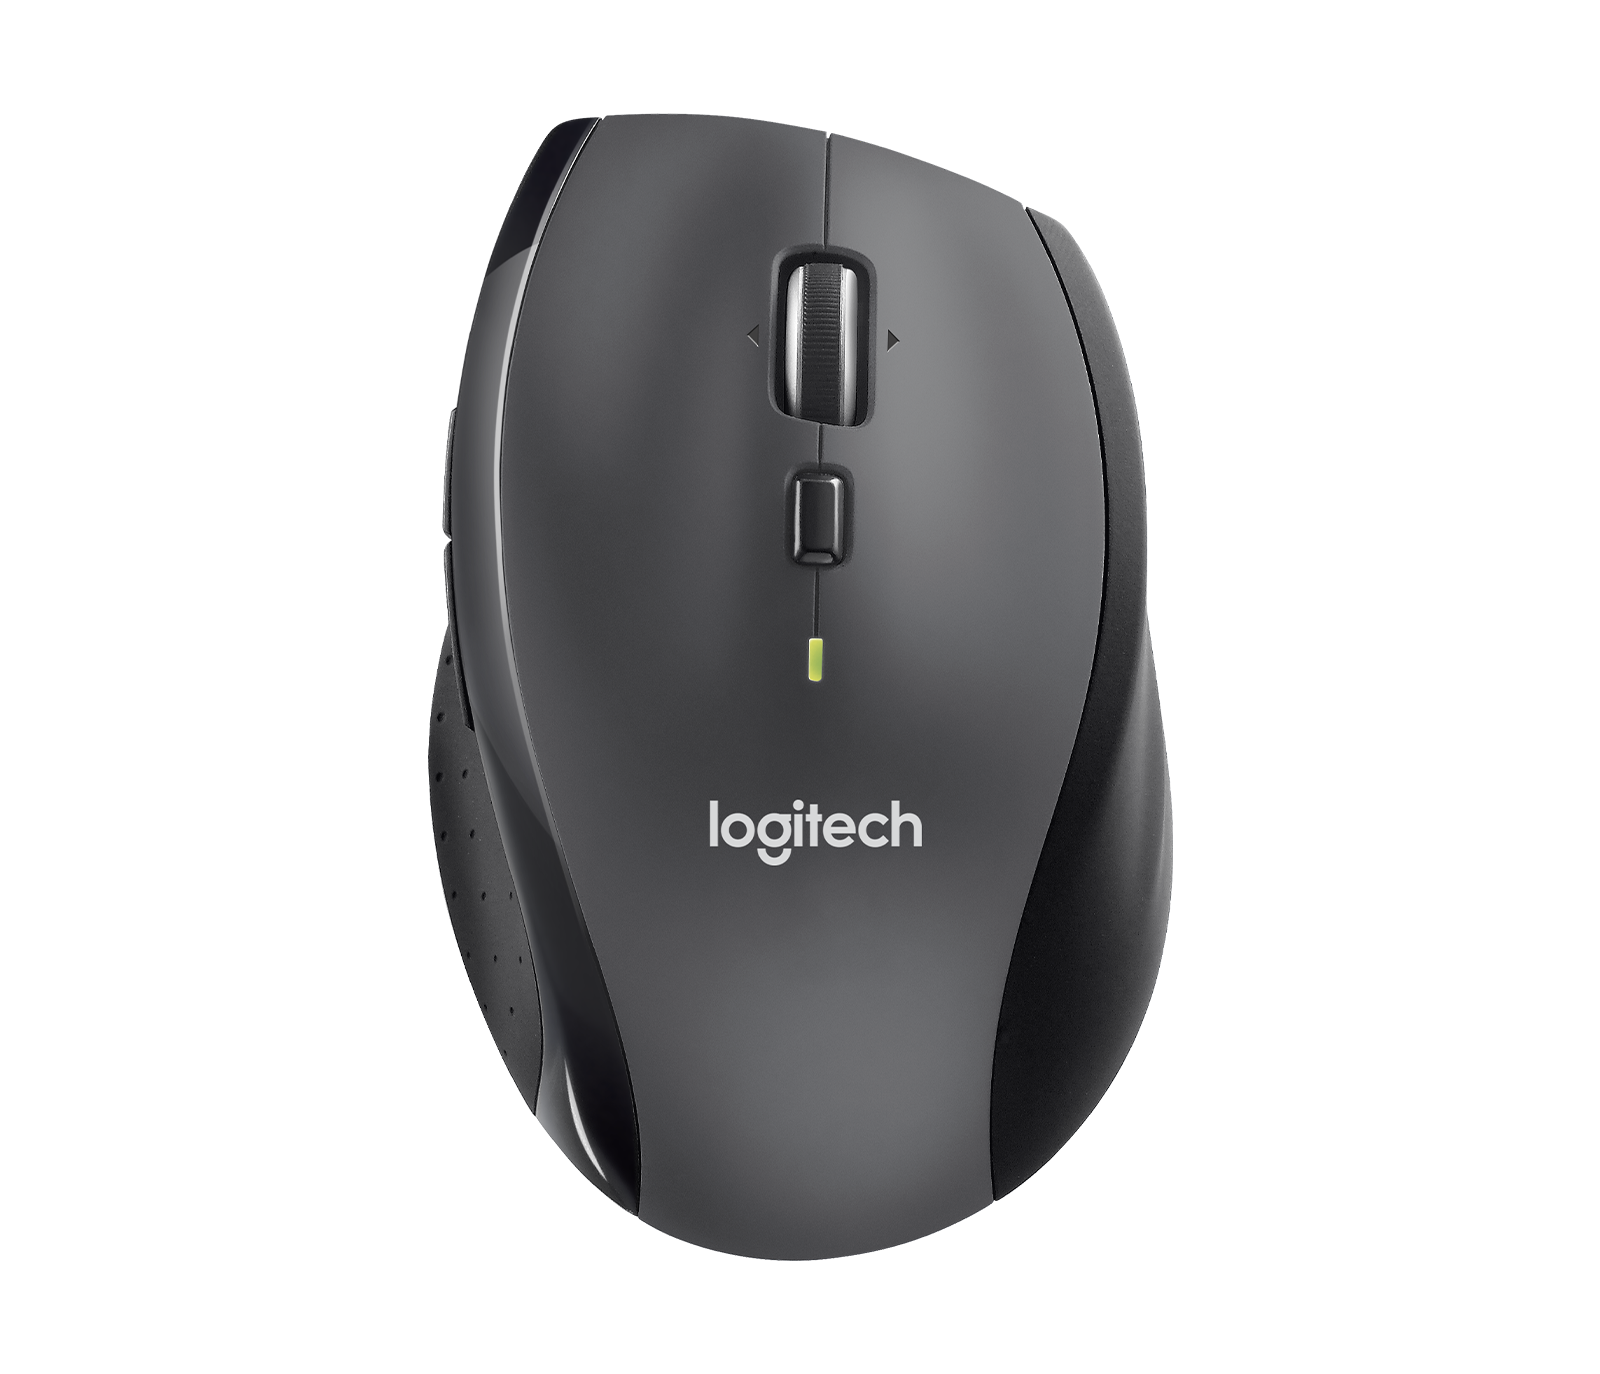 Bedoel Bemiddelaar Boer Logitech M705 Marathon Wireless Mouse with 3Y Battery Life